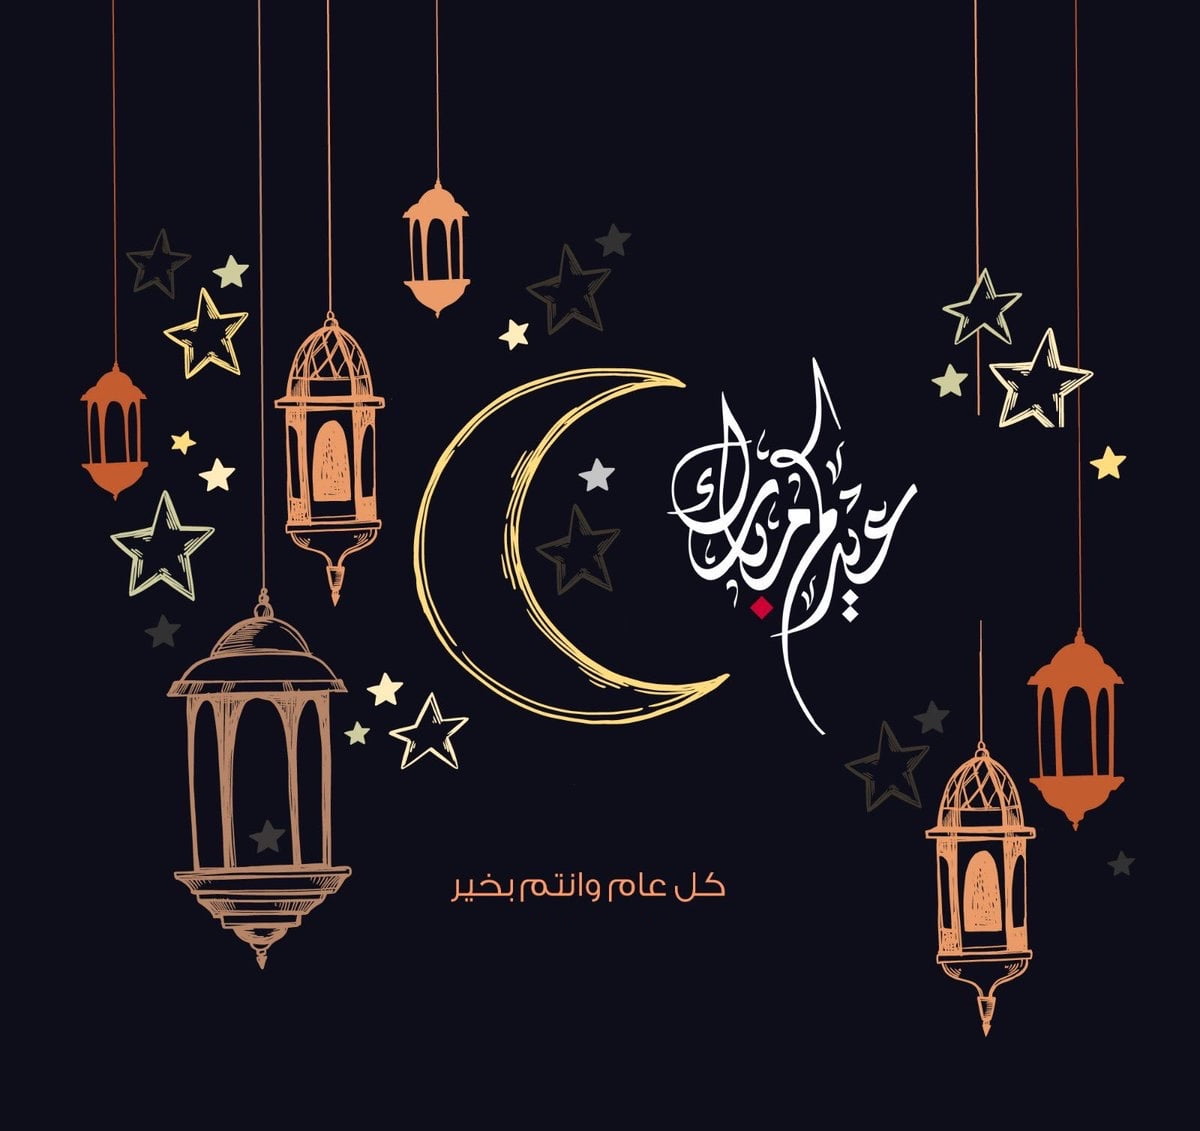 اجدد بطاقات تهنئة عيد الاضحى المبارك كروت معايدة بمناسبة حلول العيد